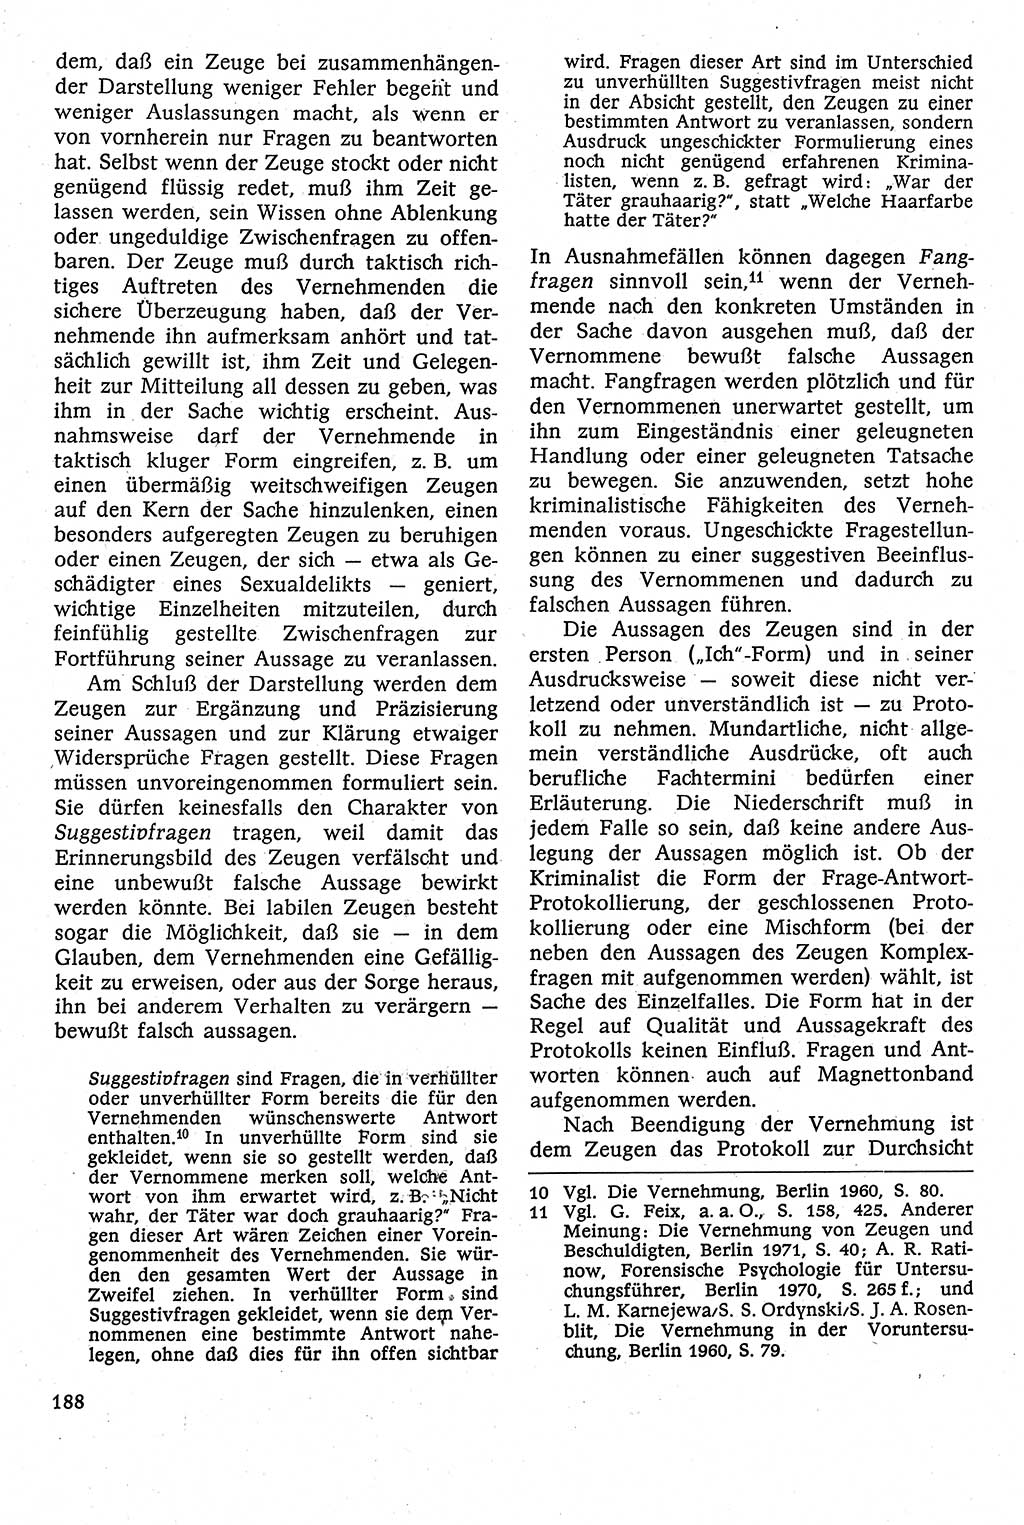 Strafverfahrensrecht [Deutsche Demokratische Republik (DDR)], Lehrbuch 1982, Seite 188 (Strafverf.-R. DDR Lb. 1982, S. 188)